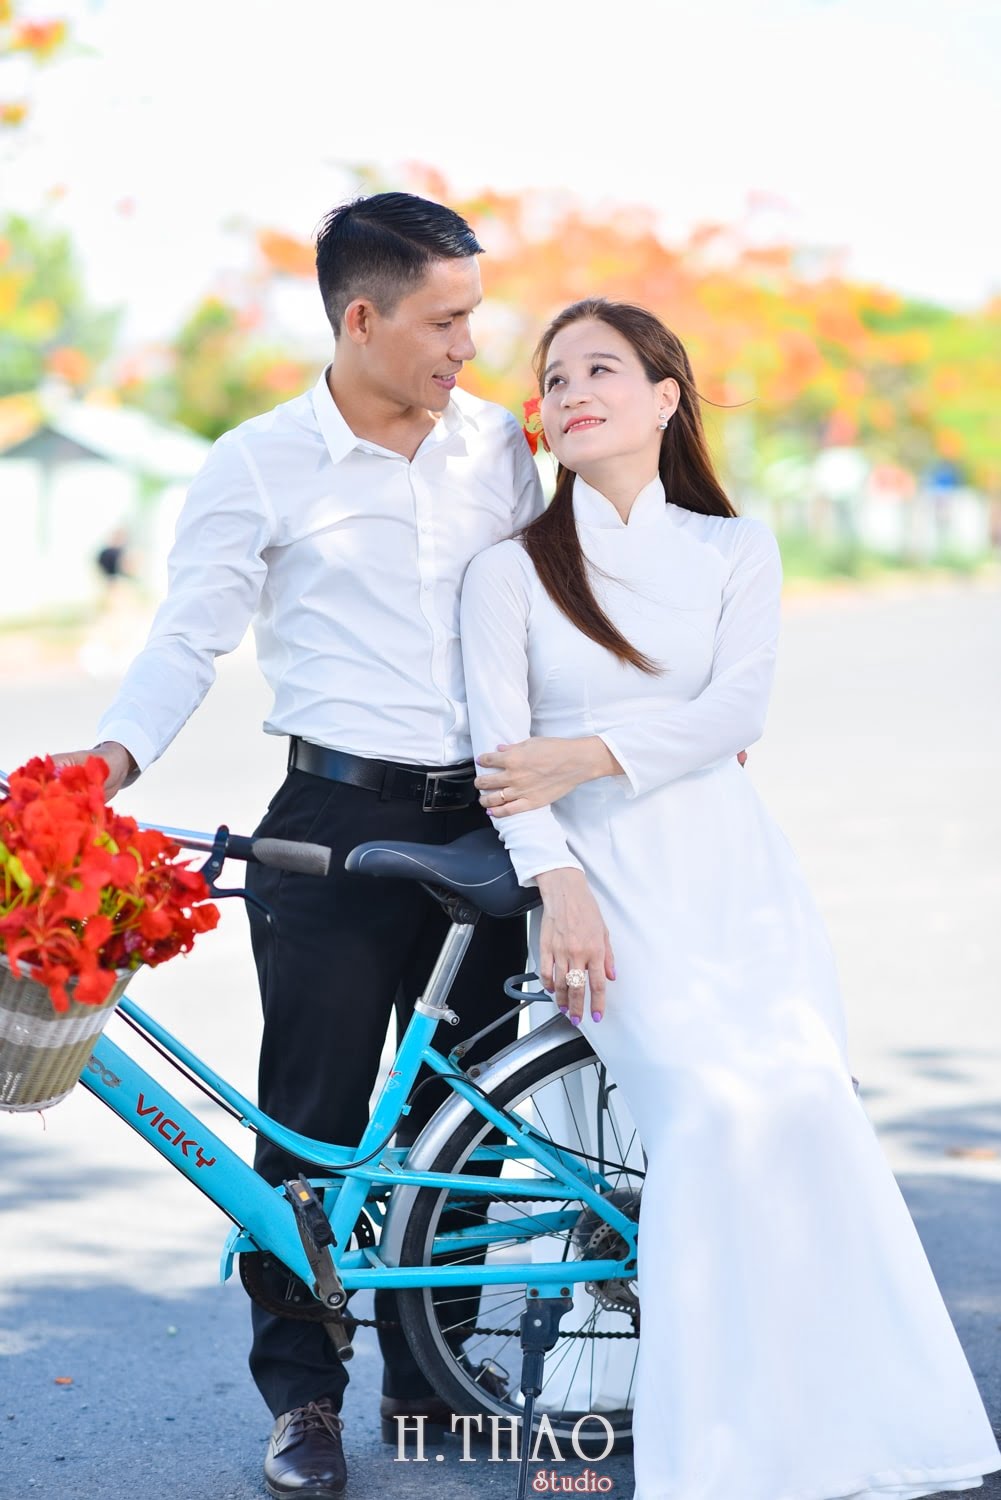 Anh hoa phuong 11 min - Bộ ảnh couple chụp với hoa phượng tuyệt đẹp - HThao Studio